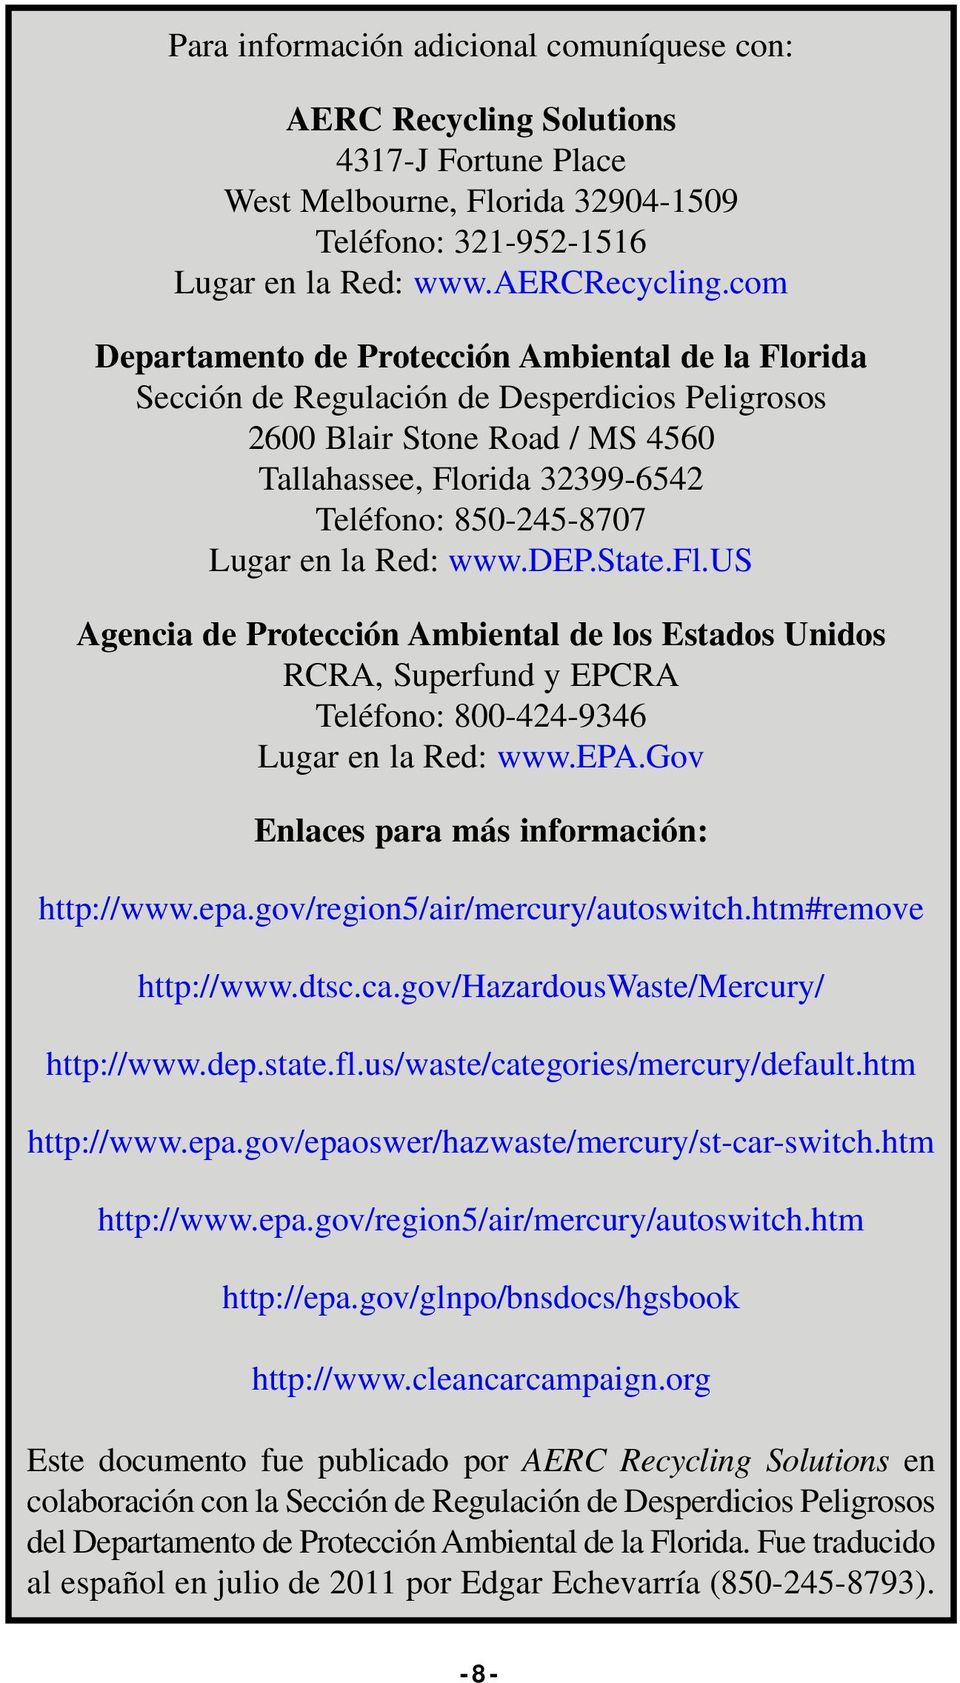 la Red: www.dep.state.fl.us Agencia de Protección Ambiental de los Estados Unidos RCRA, Superfund y EPCRA Teléfono: 800-424-9346 Lugar en la Red: www.epa.gov Enlaces para más información: http://www.